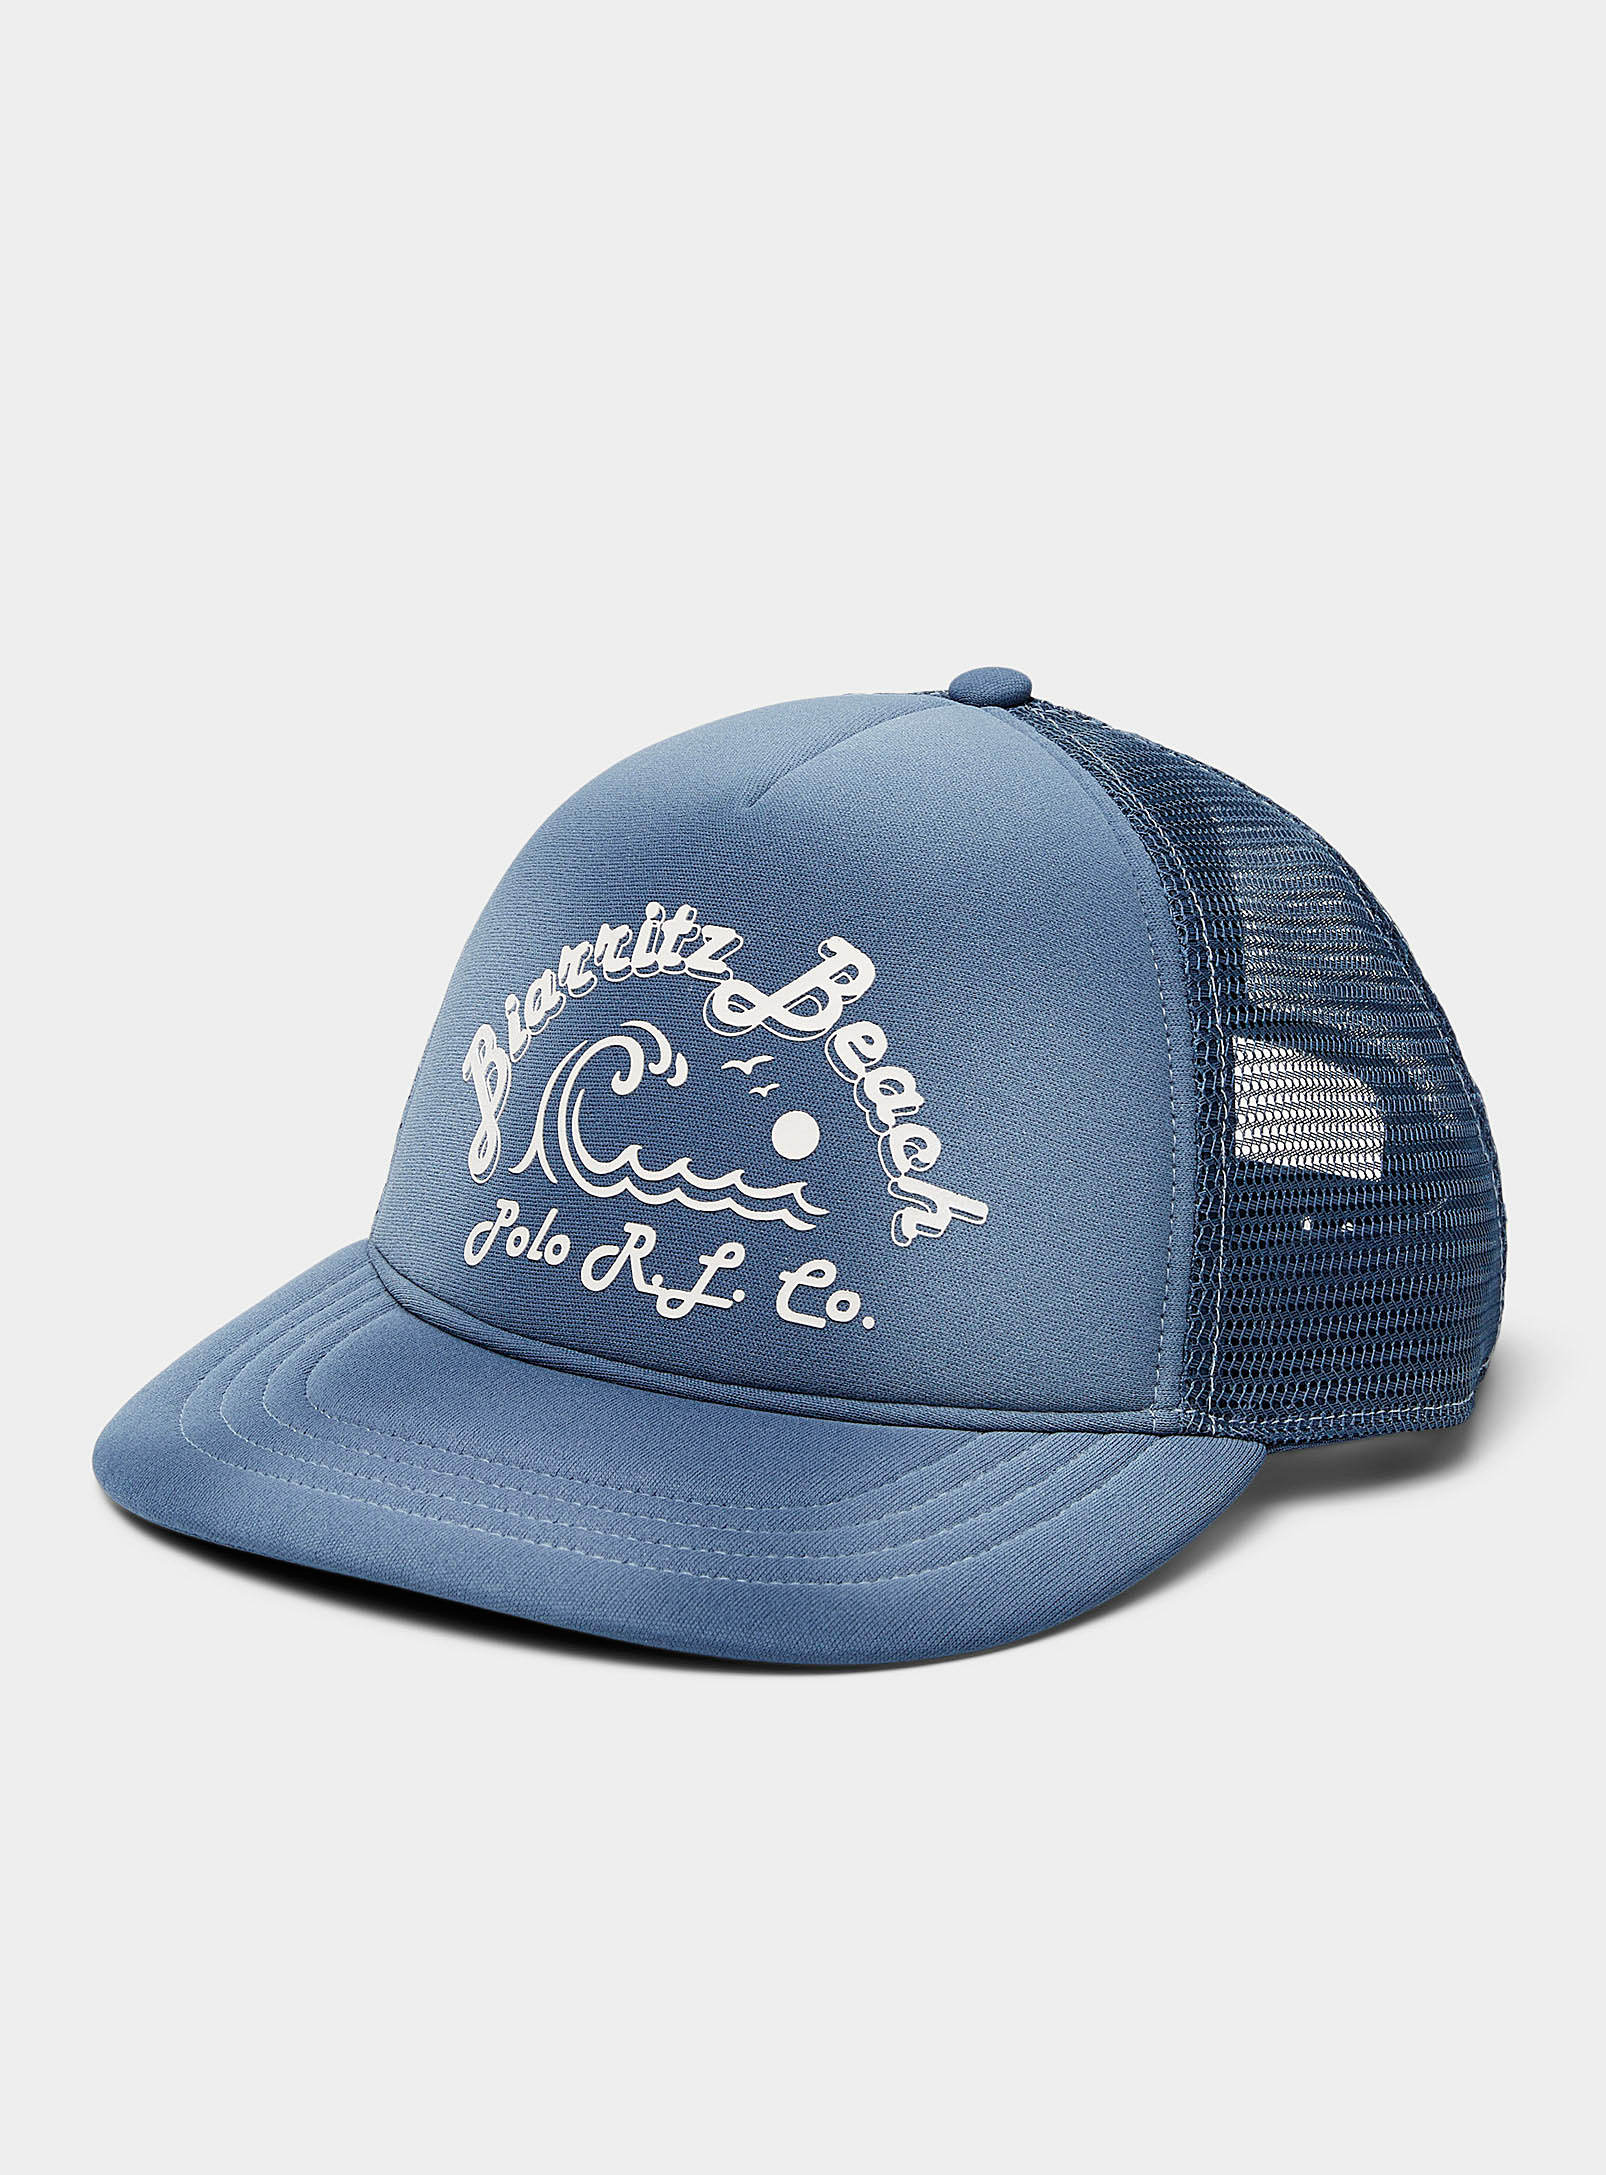 Polo Ralph Lauren - Men's Seaside trucker cap